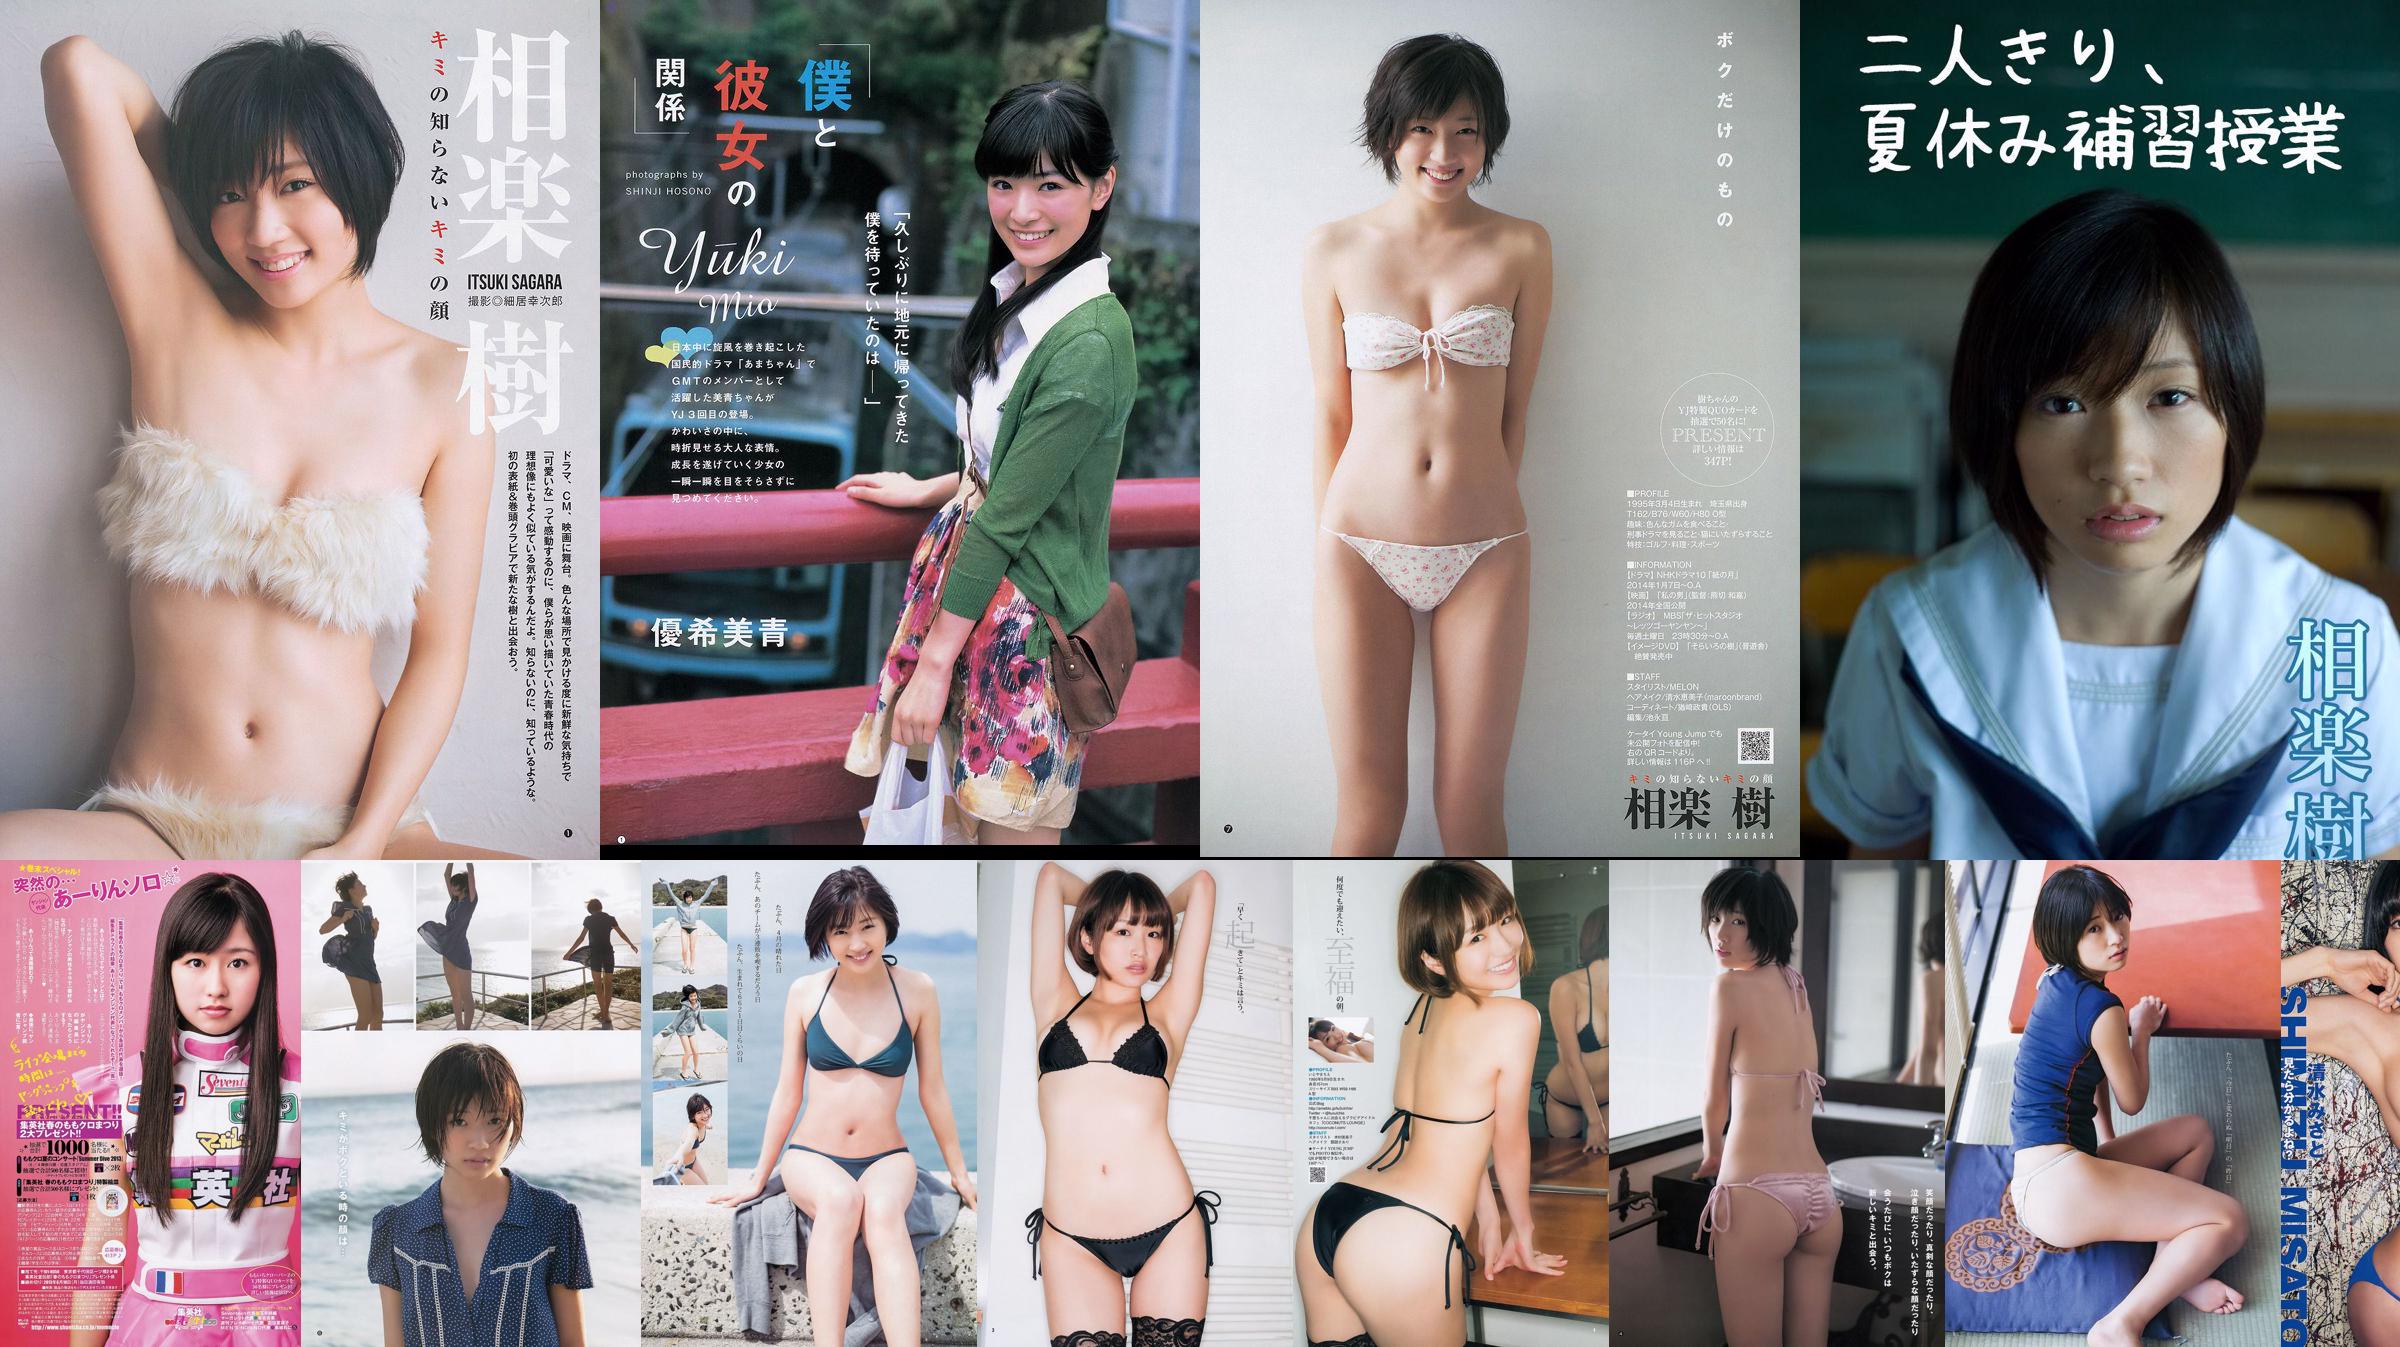 ももいろクローバーZ Aikaru たわコレ-たわわコレクション- [Weekly Young Jump] 2013 No.21-22 Photo Magazine No.761699 Page 1